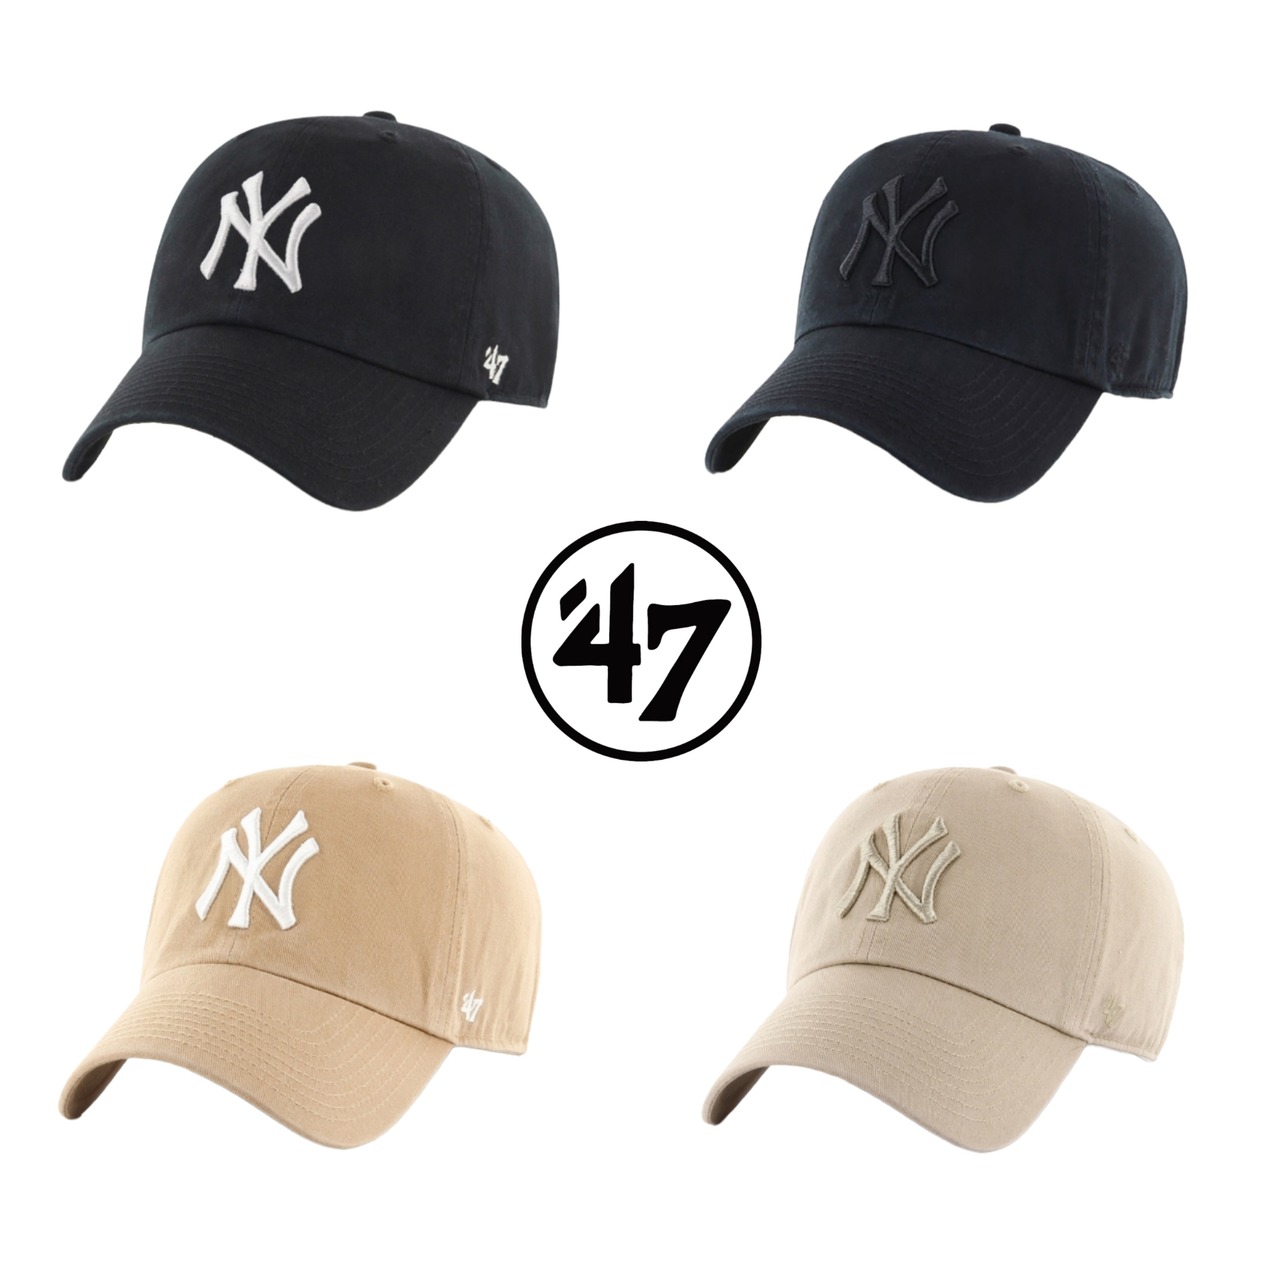 【47】47 CAP (NY)